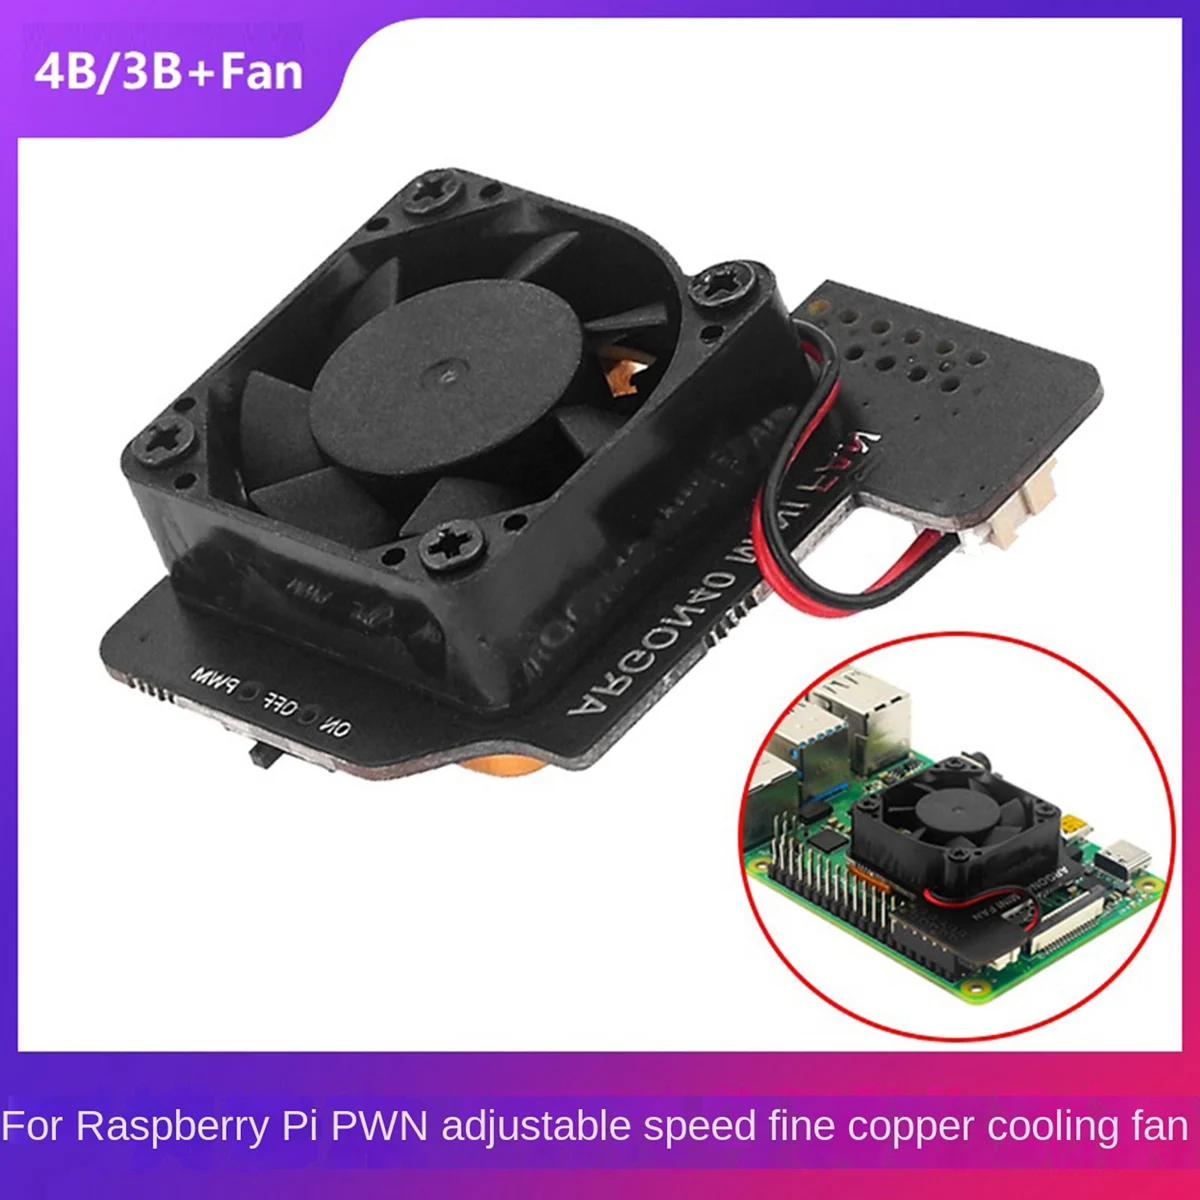 

Для Raspberry Pie 4B/3B/3B +/3A + PWN Регулируемый скоростной охлаждающий вентилятор 12 GPIO источник питания с медной металлической базой ВКЛ/ВЫКЛ